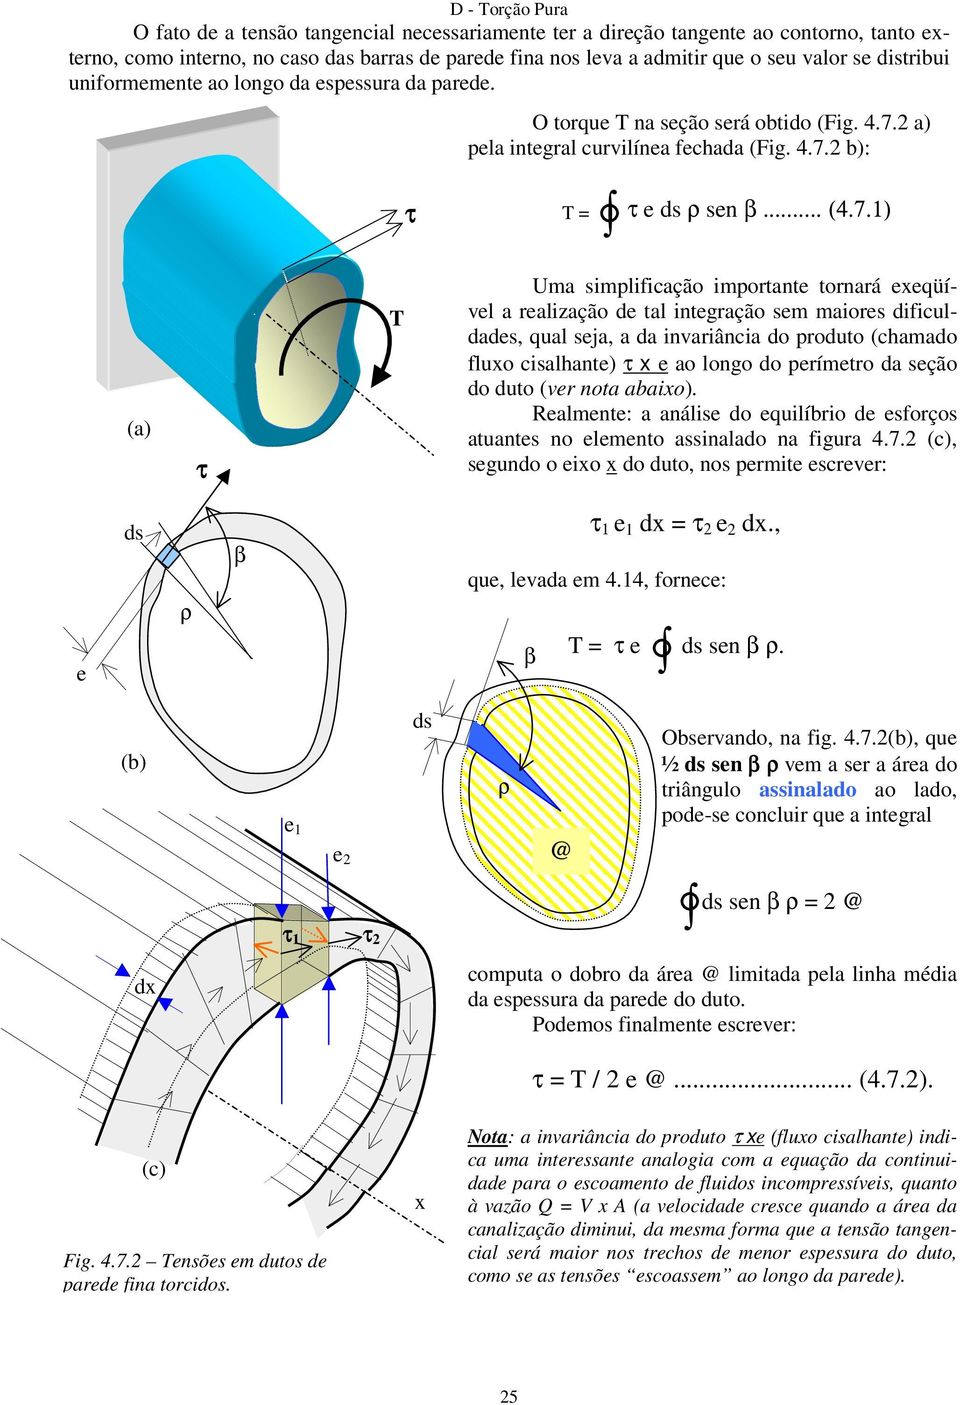 2 a) pela integral curvilínea fechada (Fig. 4.7.